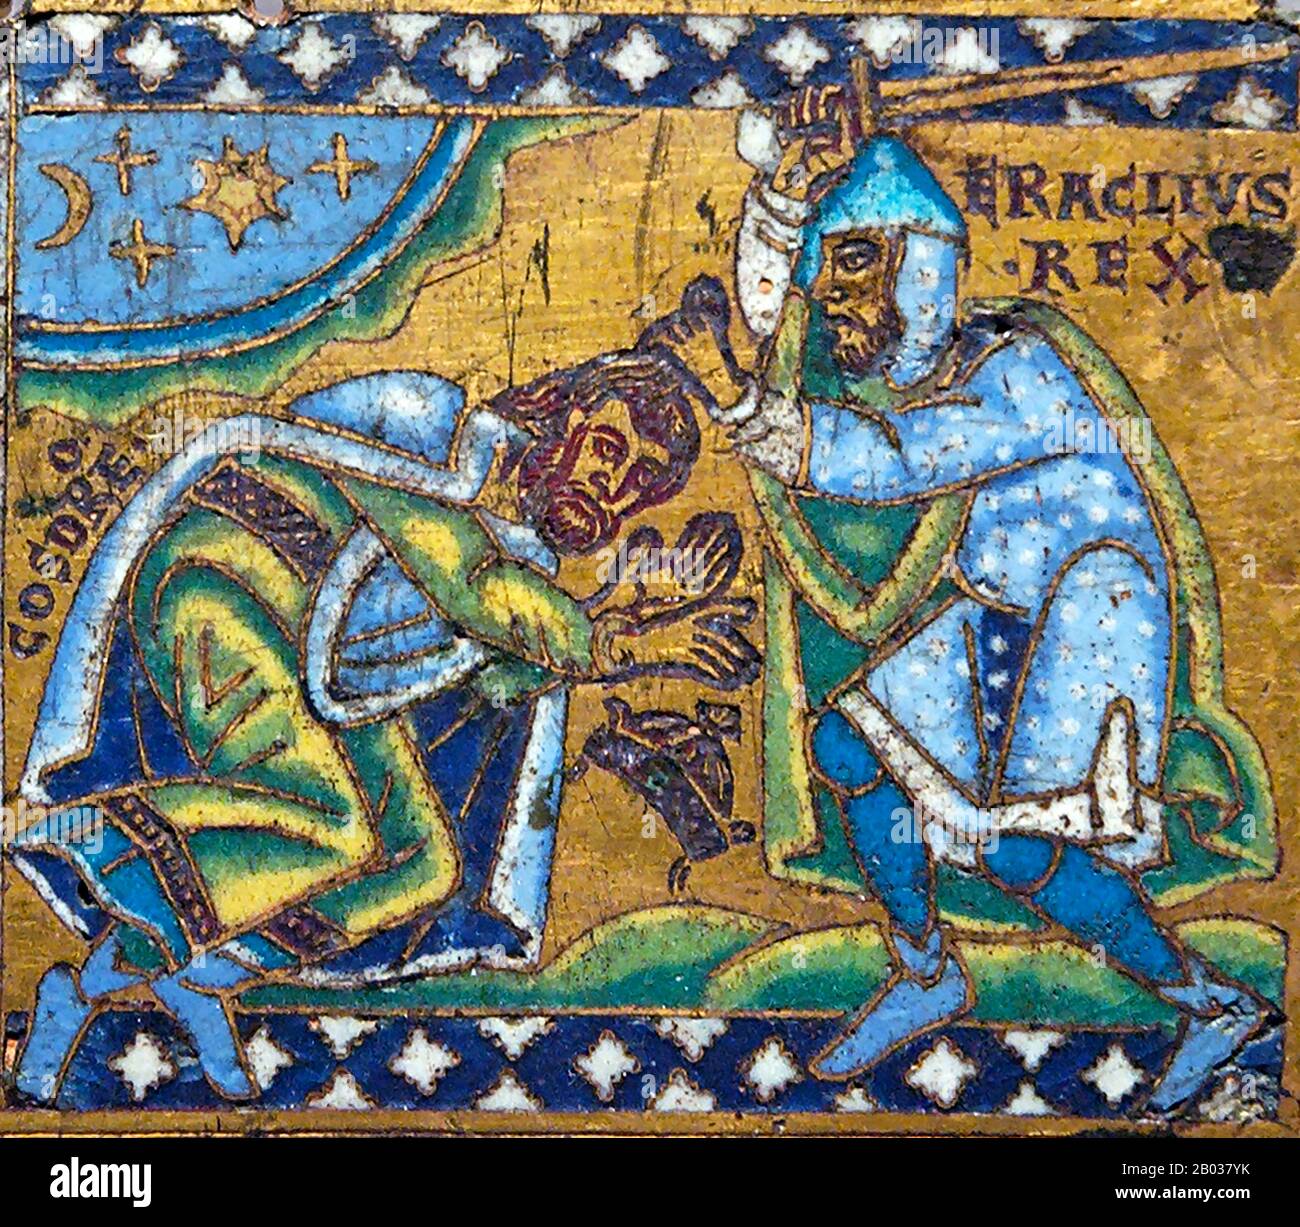 Heraclius (575-641) era figlio di Eraclio il Vecchio, esarca dell'Africa, che guidò una rivolta contro l'usurpatore imperatore Phocas, deponendolo nel 610. Heraclius divenne imperatore e fu subito costretto ad affrontare molteplici minacce su molte frontiere. Una delle frontiere principali fu la guerra bizantina-sassanide del 602-628 contro il re Khosrau II e l'Impero Sassanide. I Sassanidi riuscirono a combattere fino alle mura di Costantinopoli prima di non riuscire a penetrarli, permettendo a Eraclio di contrattaccare e guidarli fino in fondo nella capitale di Ctesifone. Khosrau fu giustiziato da suo figlio Foto Stock